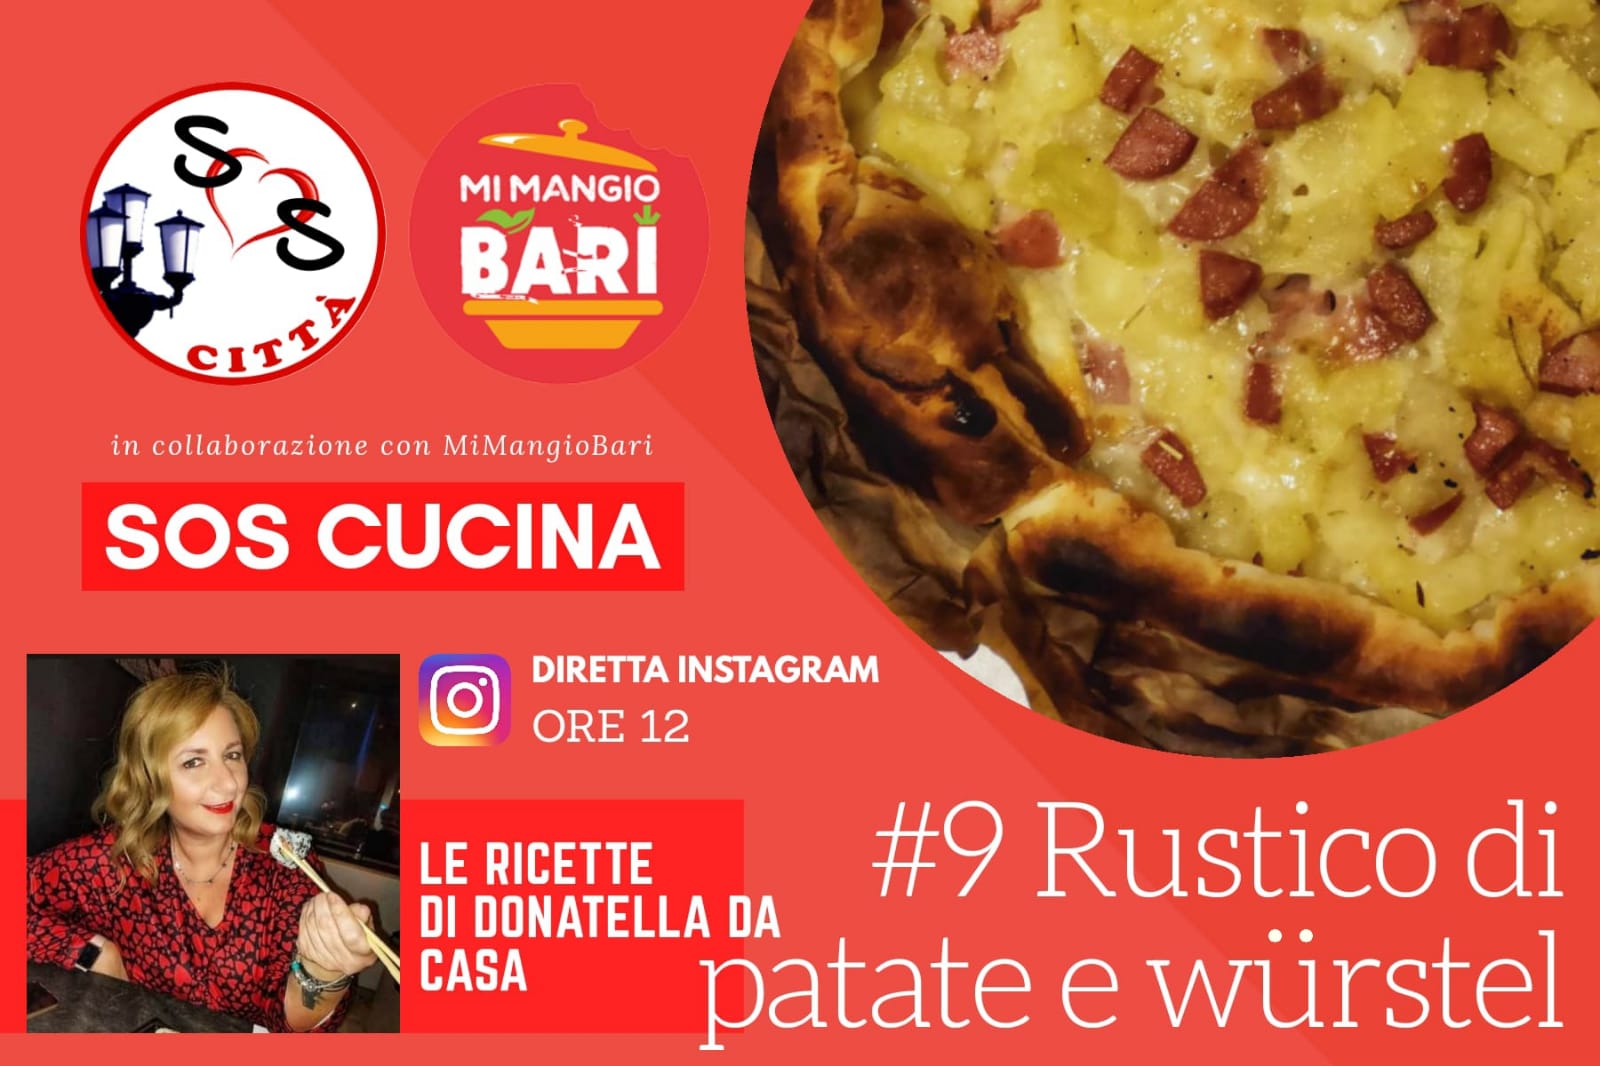 Sos cucina #9 Rustico di patate e wurstel